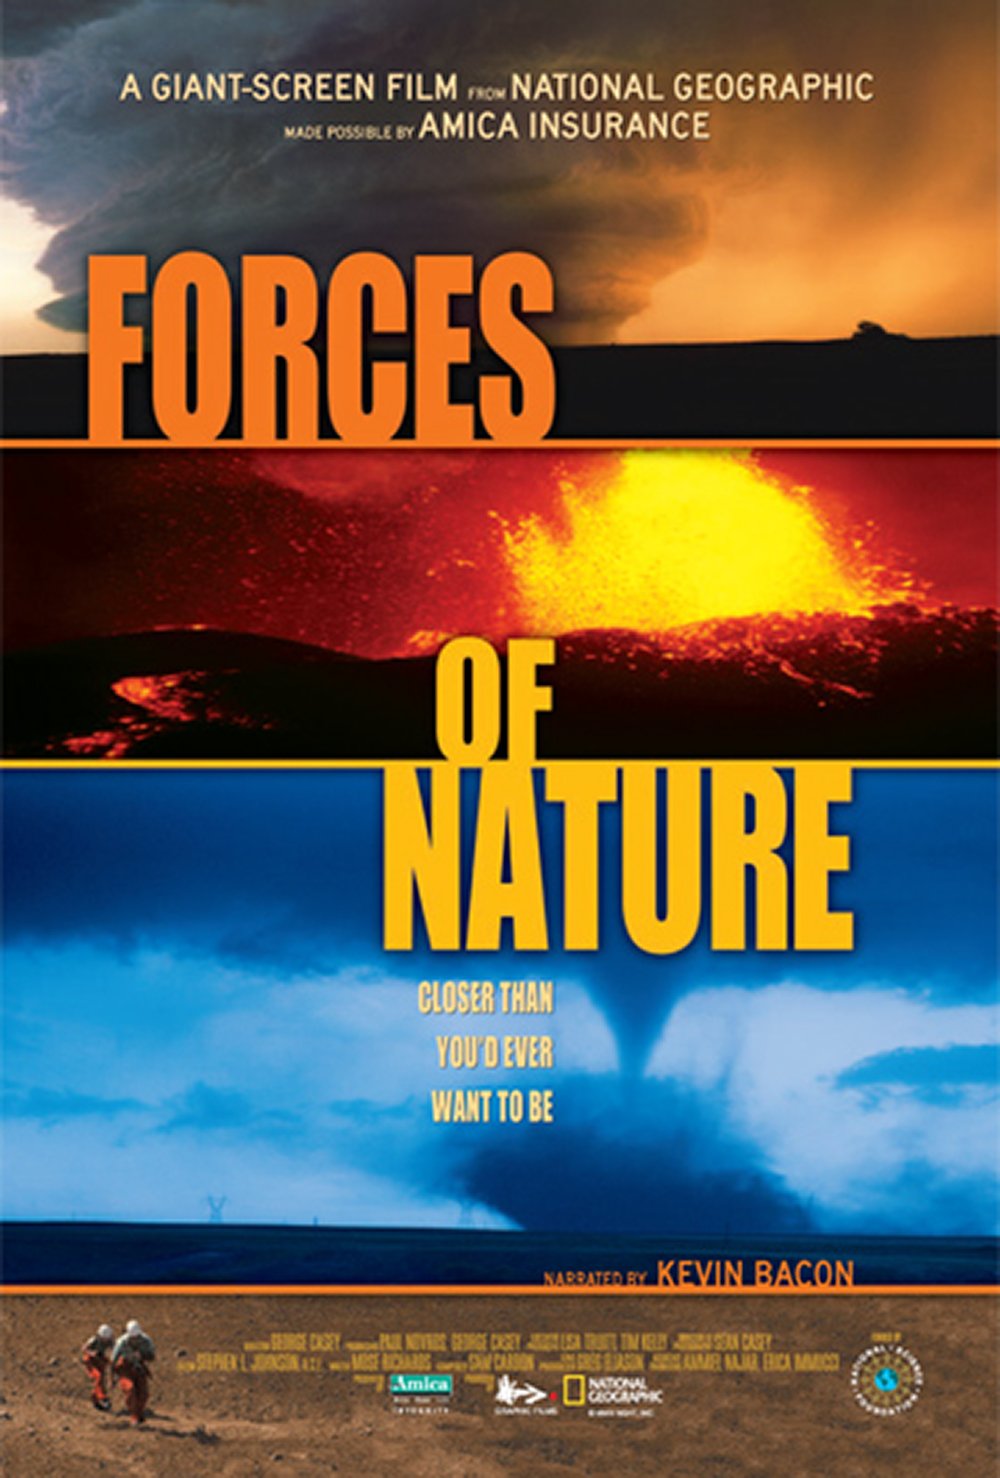 L'affiche du film Forces of Nature